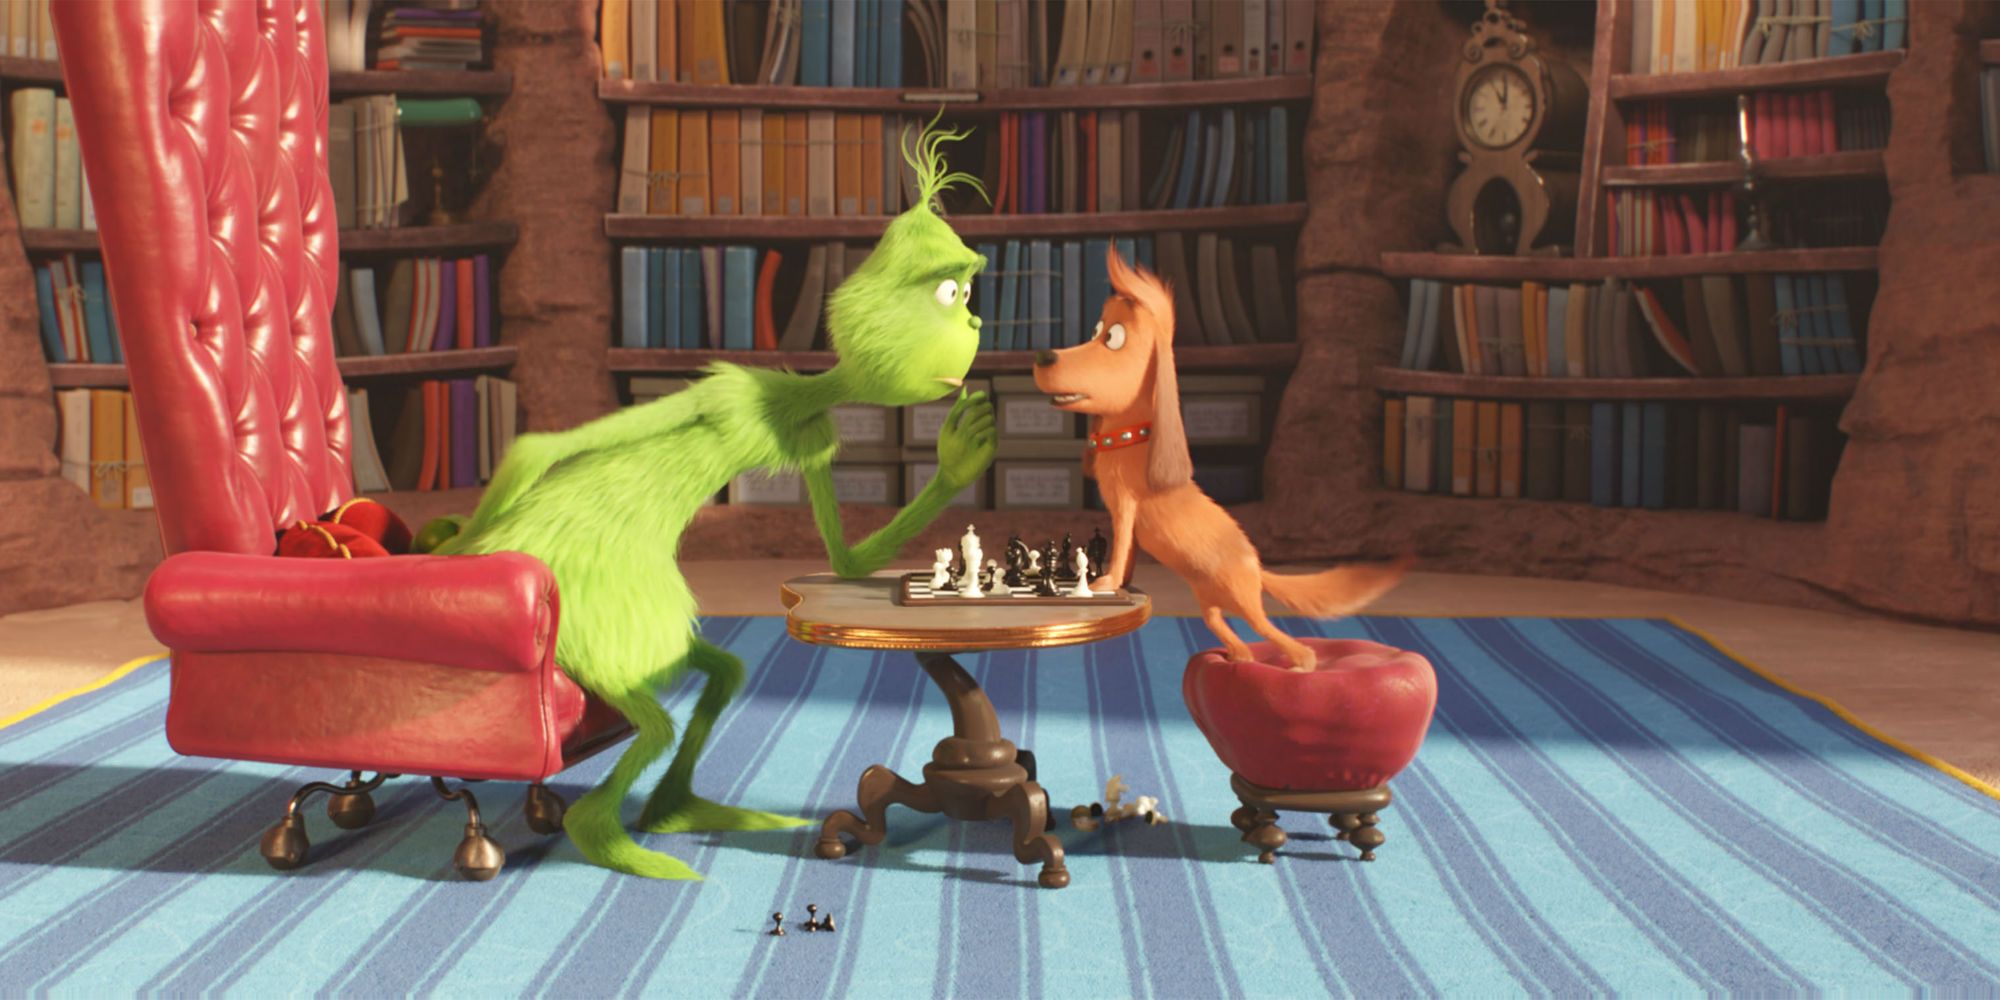 Max e o Grinch se enfrentam em uma partida de xadrez no filme de animação de 2018